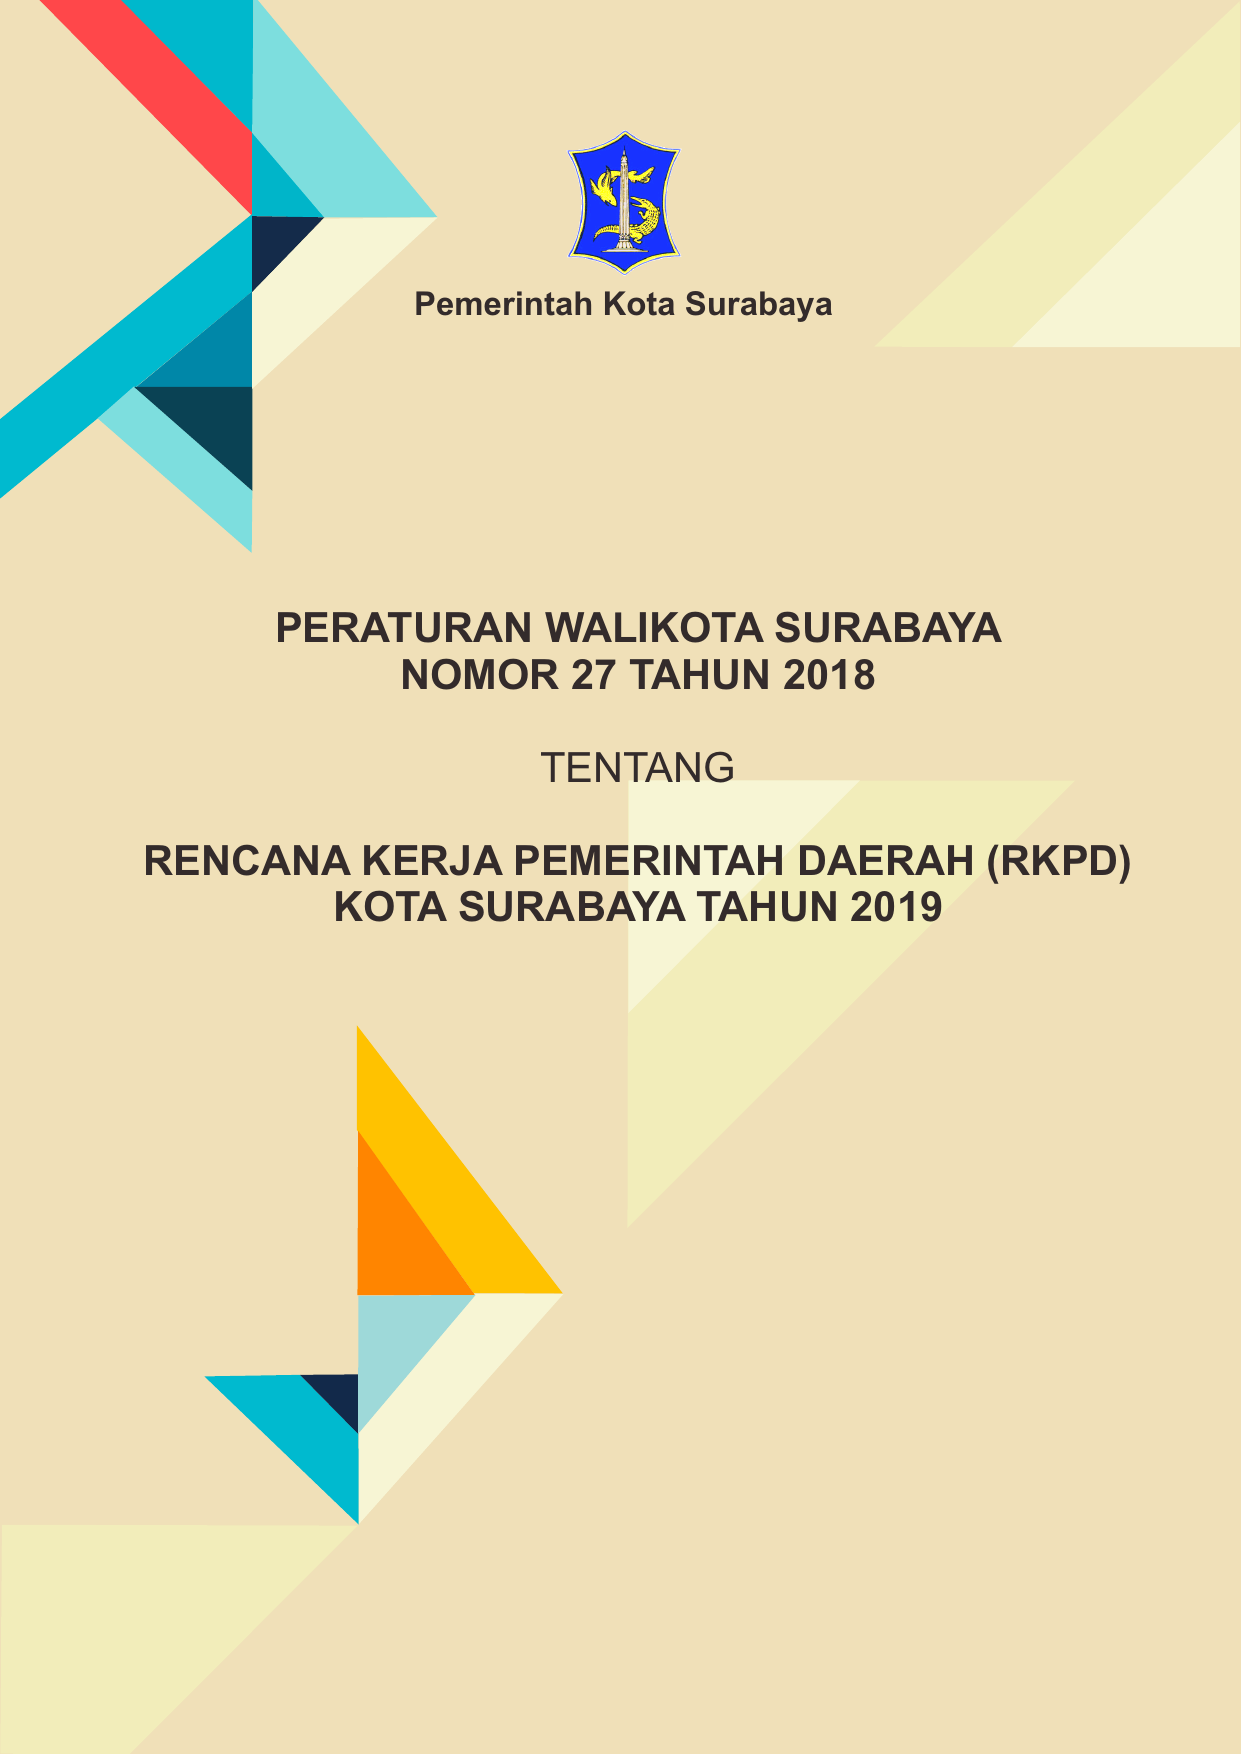 Pemerintah Kota Surabaya PERATURAN WALIKOTA SURABAYA NOMOR 27 TAHUN 2018 TENTANG RENCANA KERJA PEMERINTAH DAERAH RKPD KOTA SURABAYA TAHUN 2019 RKPD Kota